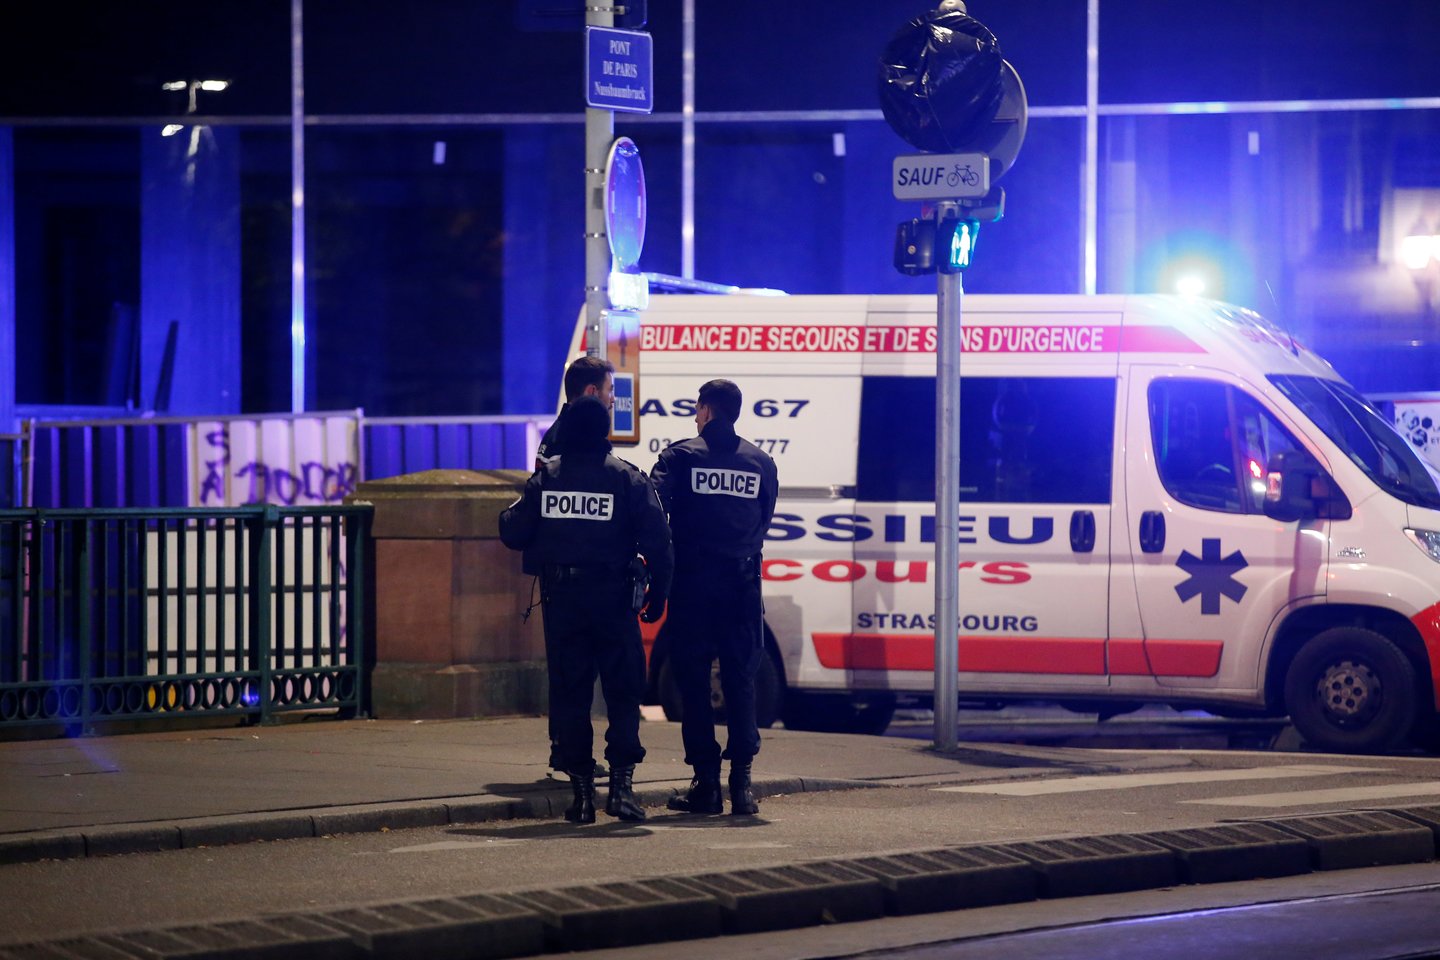  Strasbūro centre aidėjo šūviai.<br> Reuters/Scanpix nuotr.